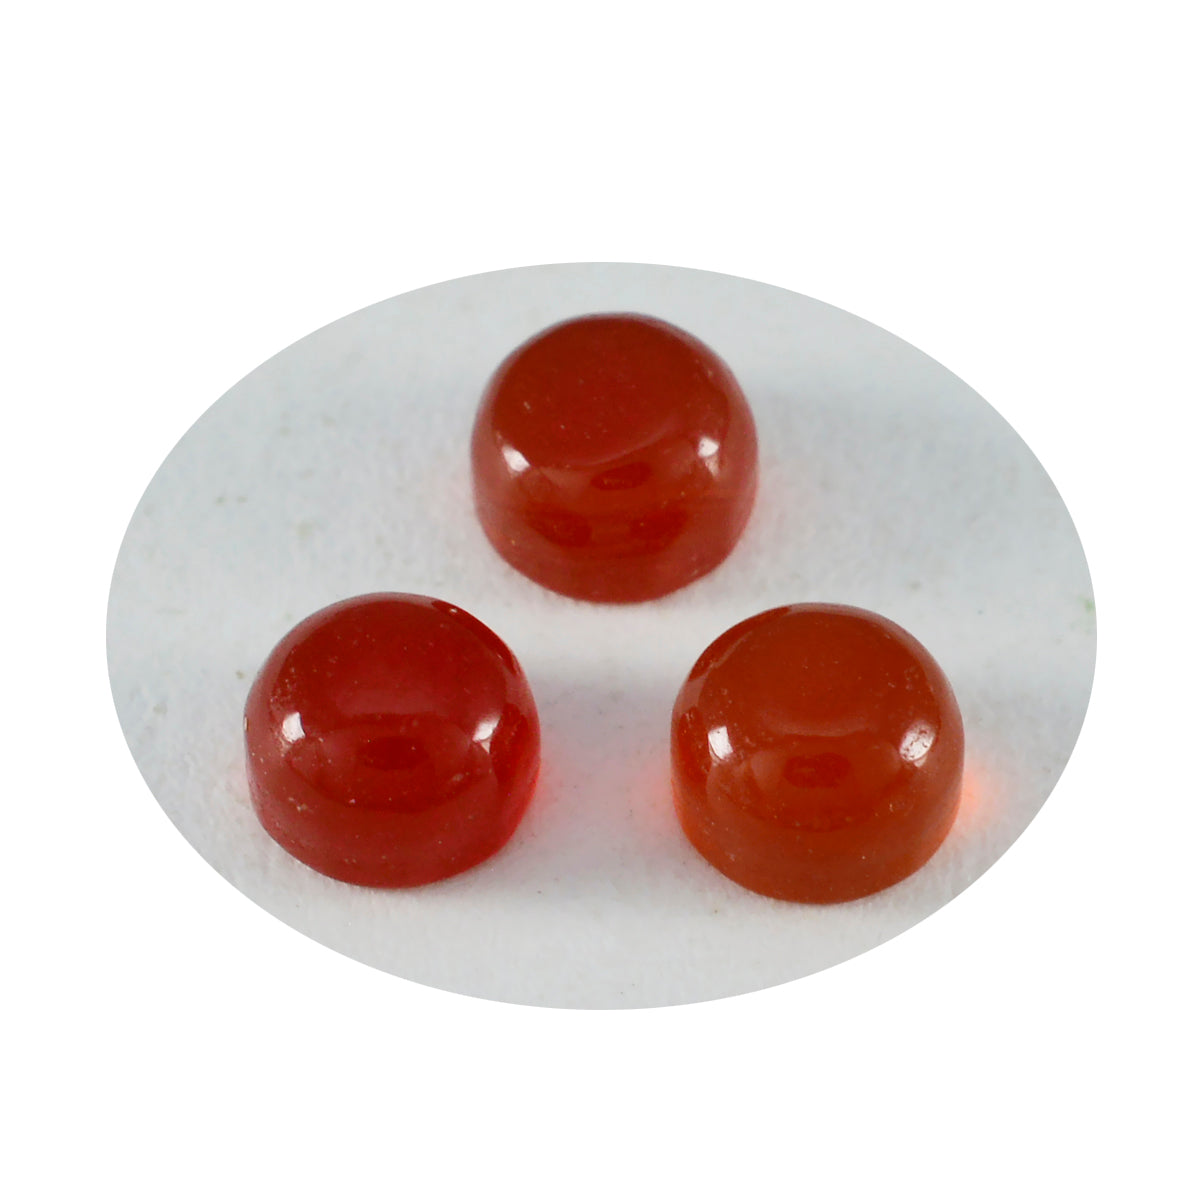 Riyogems 1PC rode onyx cabochon 10x10 mm ronde vorm uitstekende kwaliteit losse edelsteen